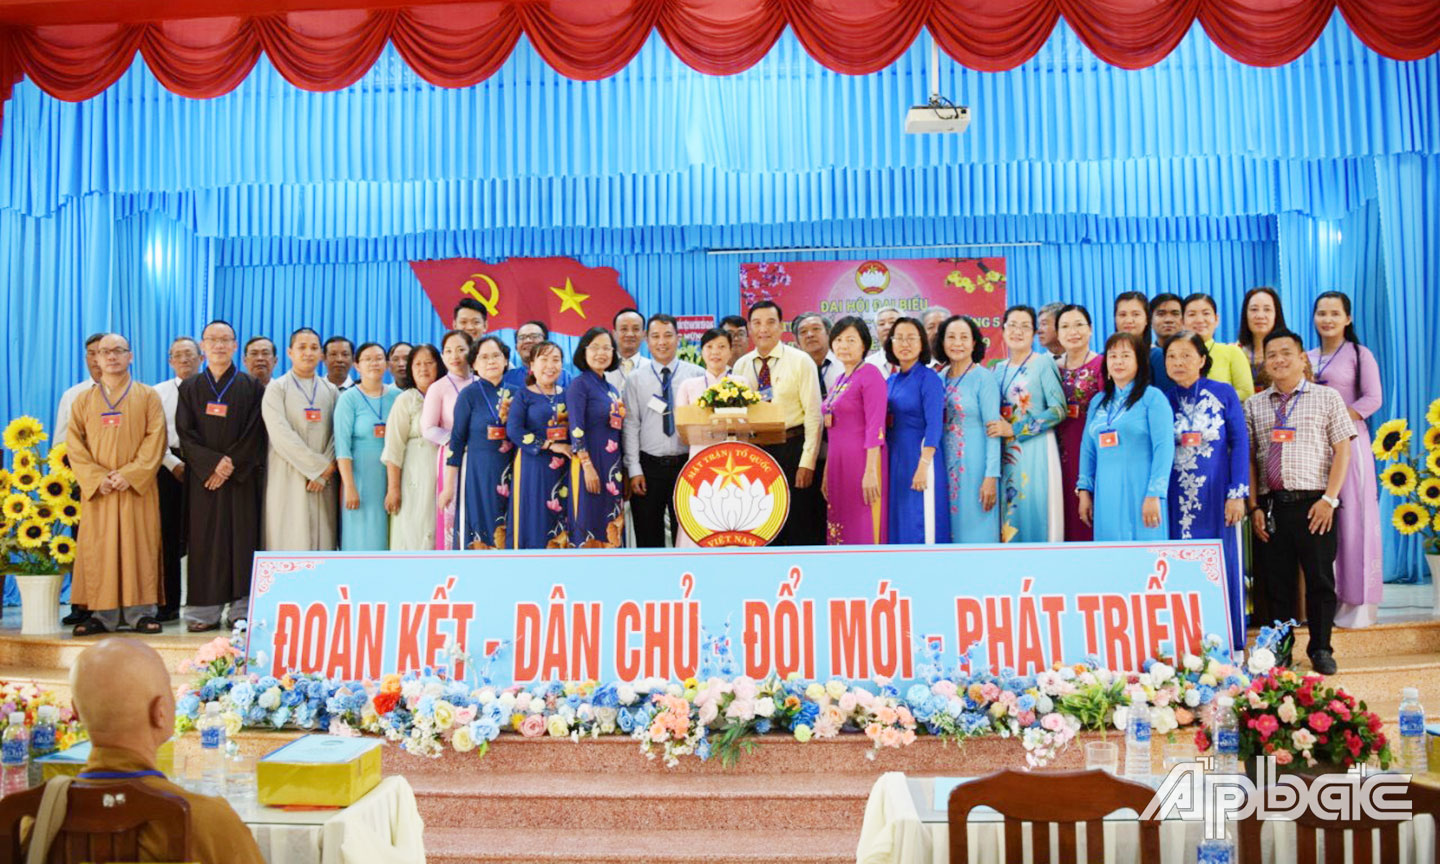 Đến ngày 5-4, Tiền Giang đã hoàn thành Đại hội MTTQ cấp xã.